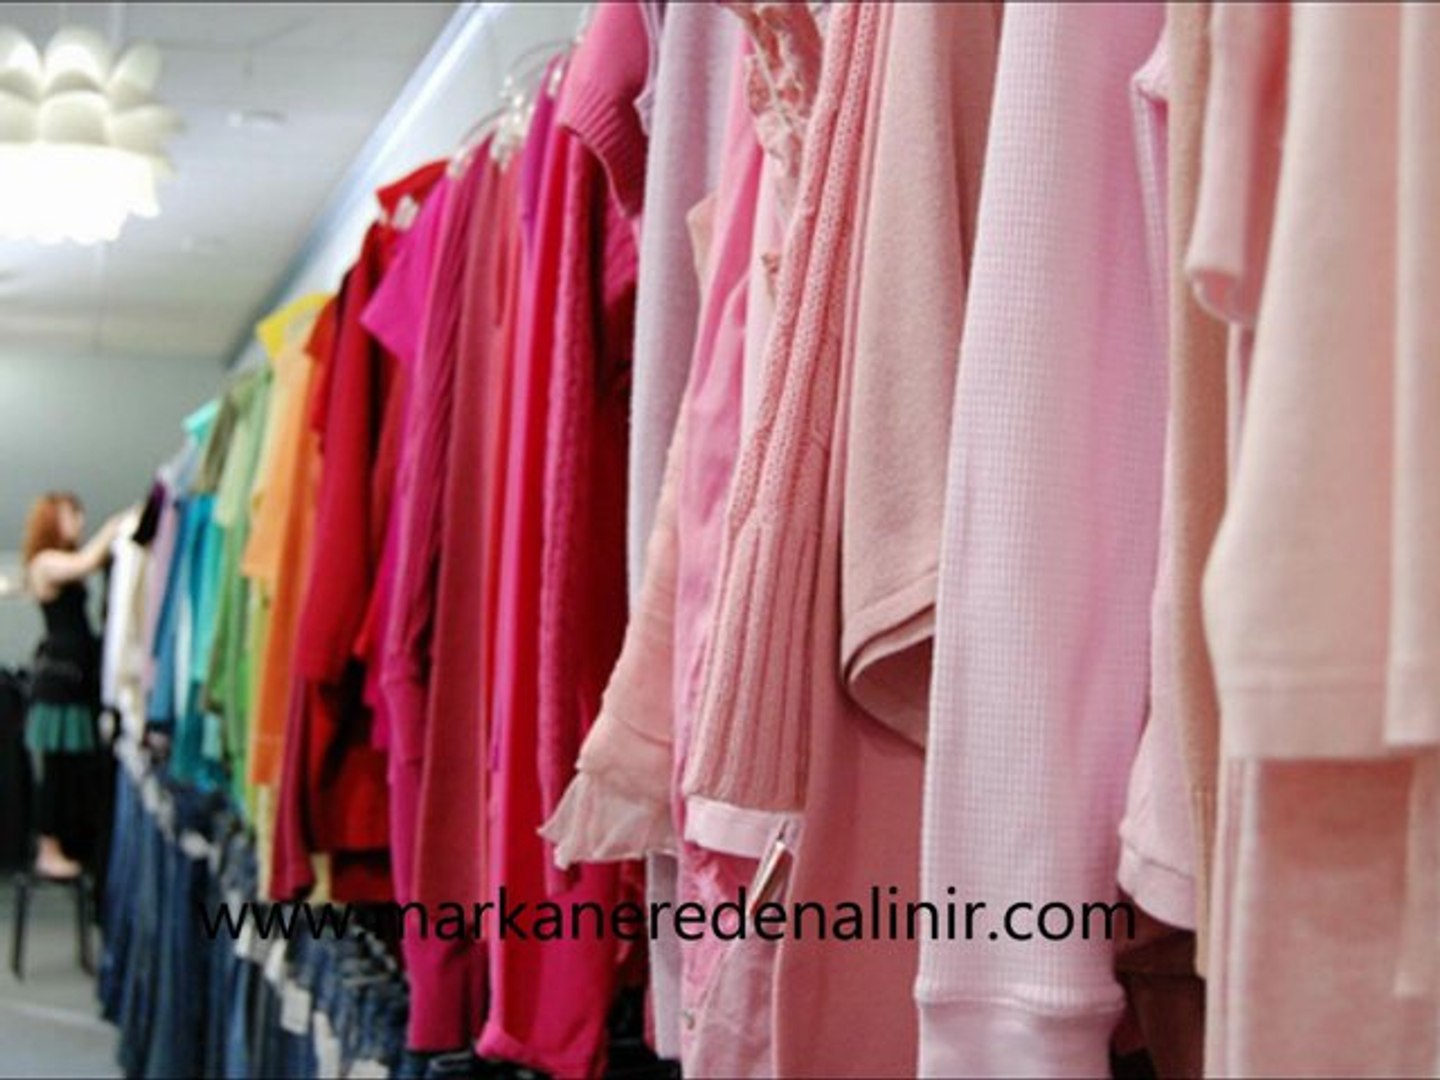 İkinci El Kıyafet Satan Yerler, İkinci El Kıyafet Mağazaları İstanbul, İkinci  El Kıyafet Satışı - Dailymotion Video